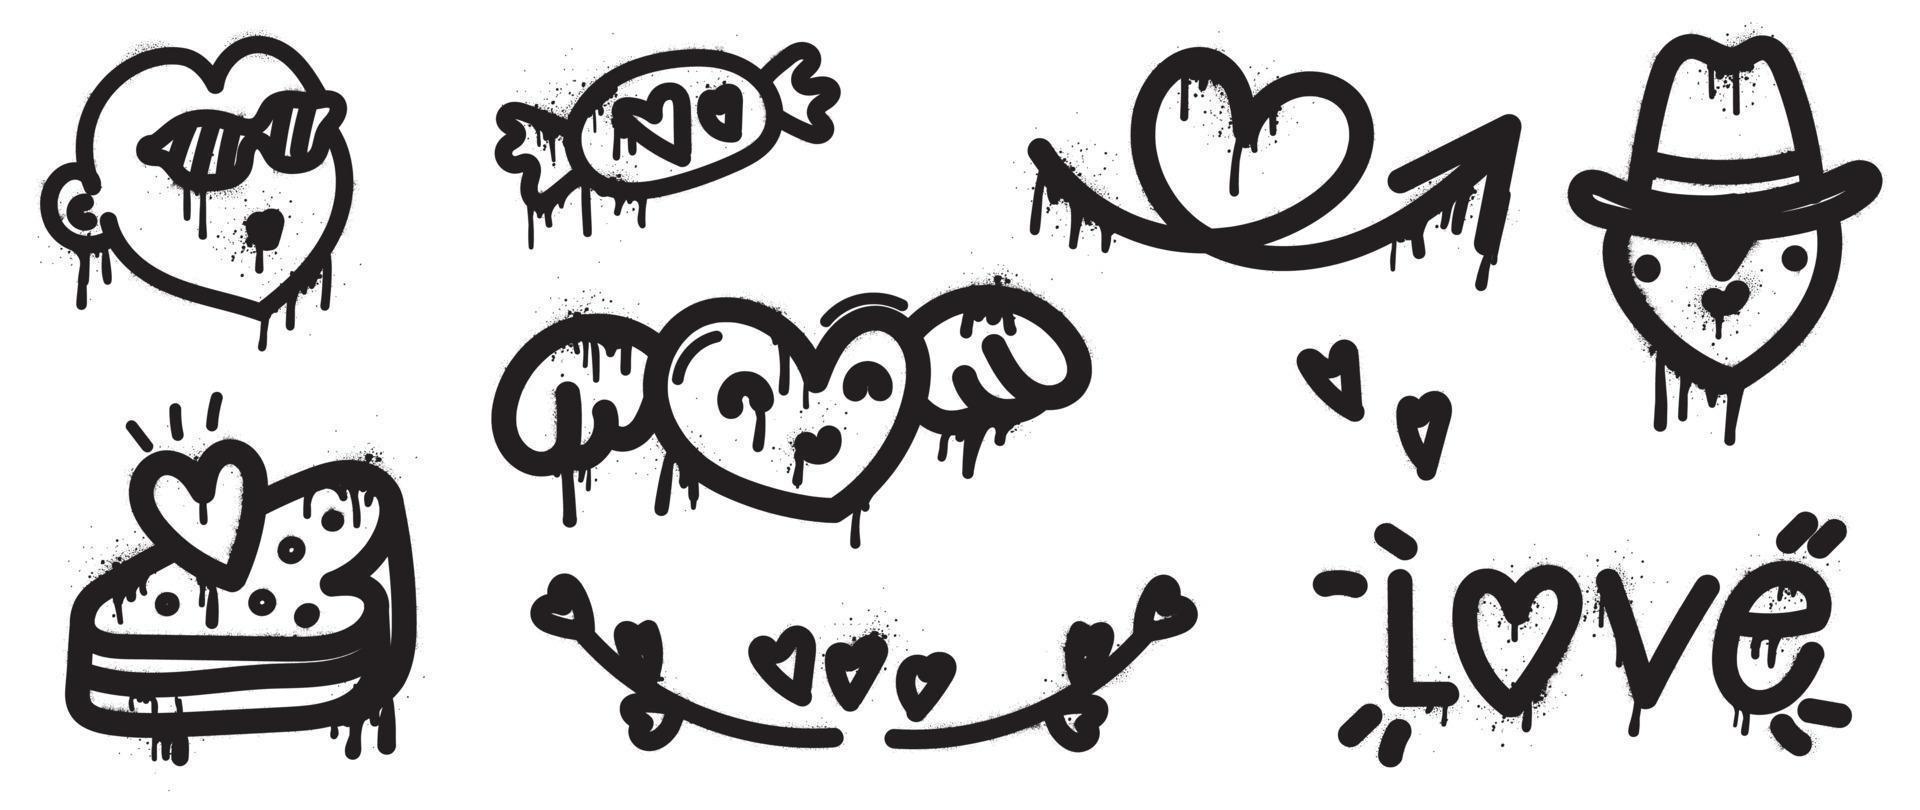 conjunto de vector de elemento de San Valentín de pintura en aerosol. colección de estilo de textura de graffiti dibujado a mano de forma de corazón cómico, caramelo, flecha, pastel, corazón volador. diseño para impresión, caricatura, tarjeta, decoración, pegatina.